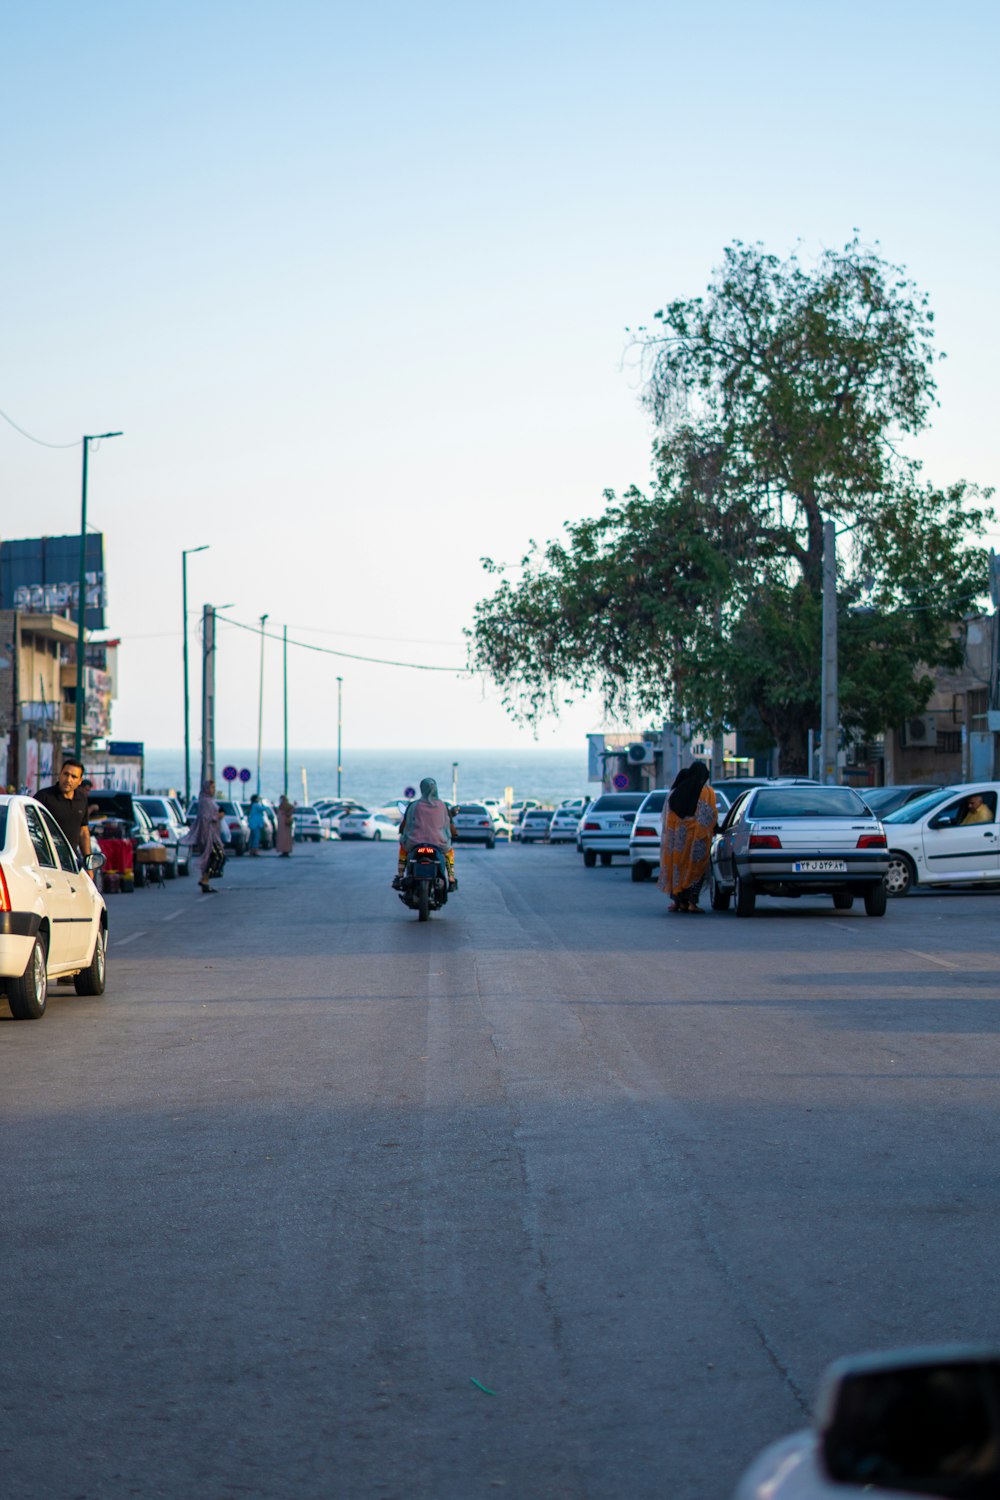 Un grupo de personas montando motocicletas por una calle